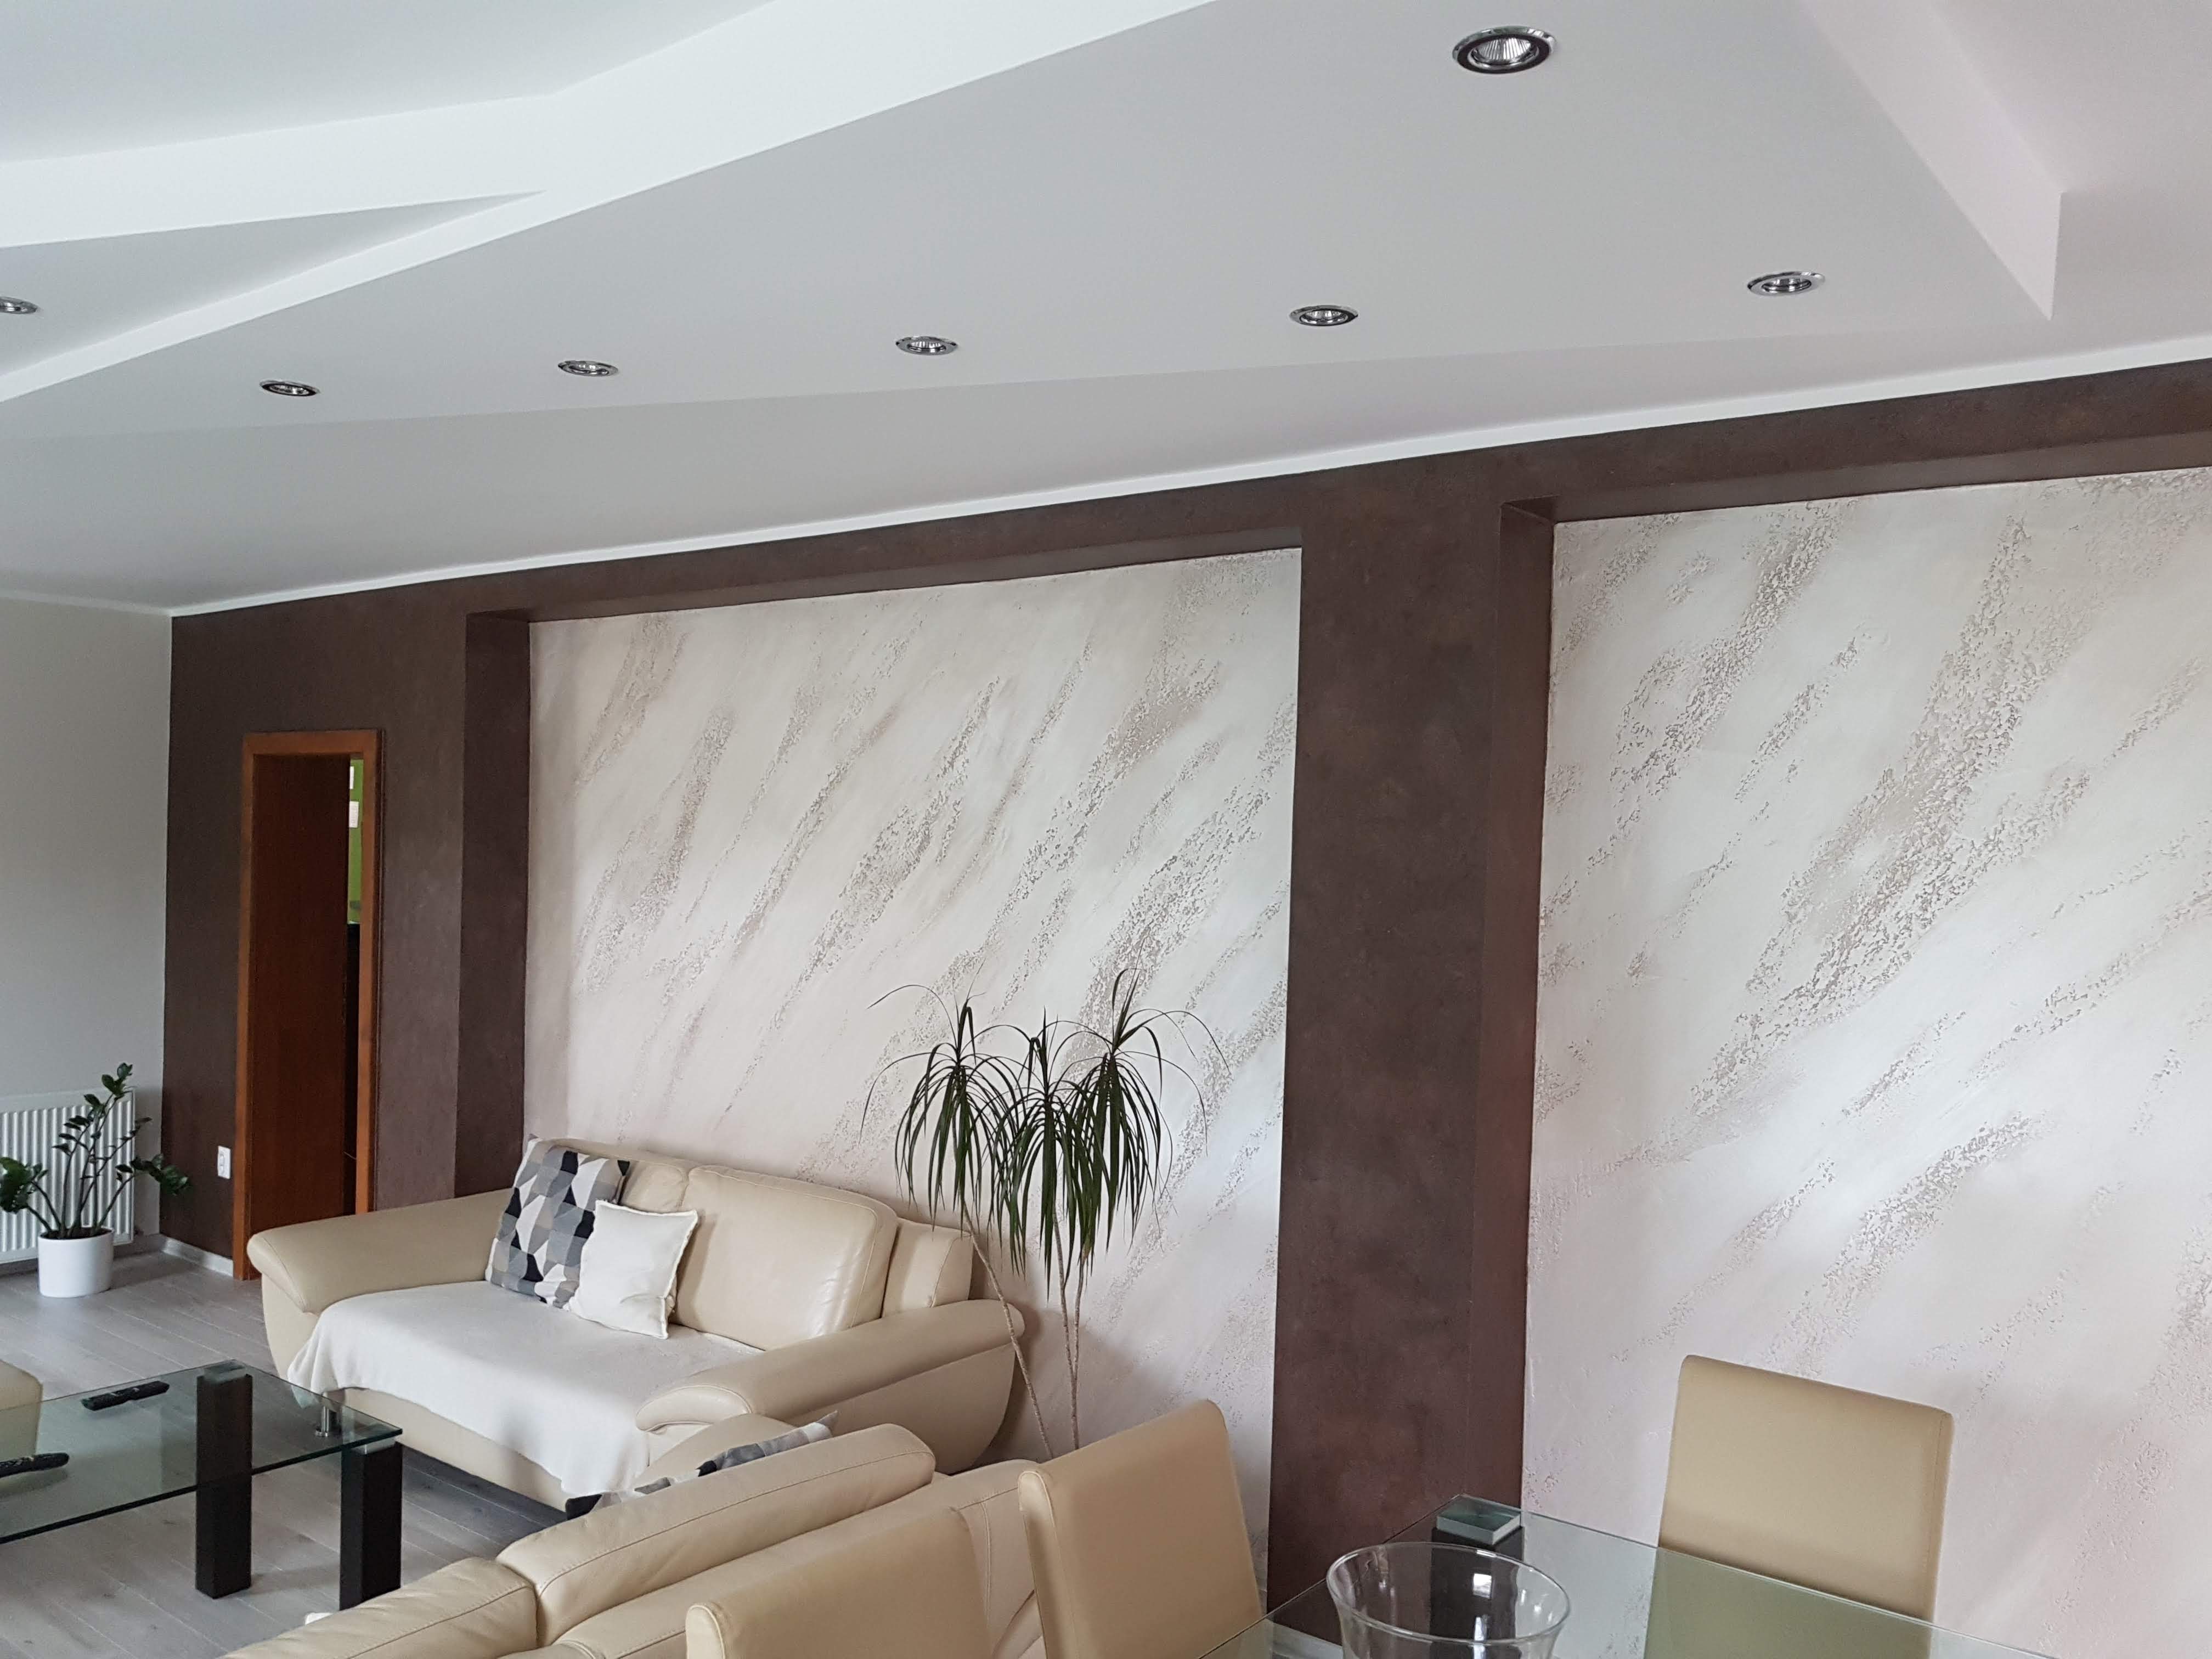 Luxusná obývačka - travertínový dekor v kombinácií s pieskovým dekorom